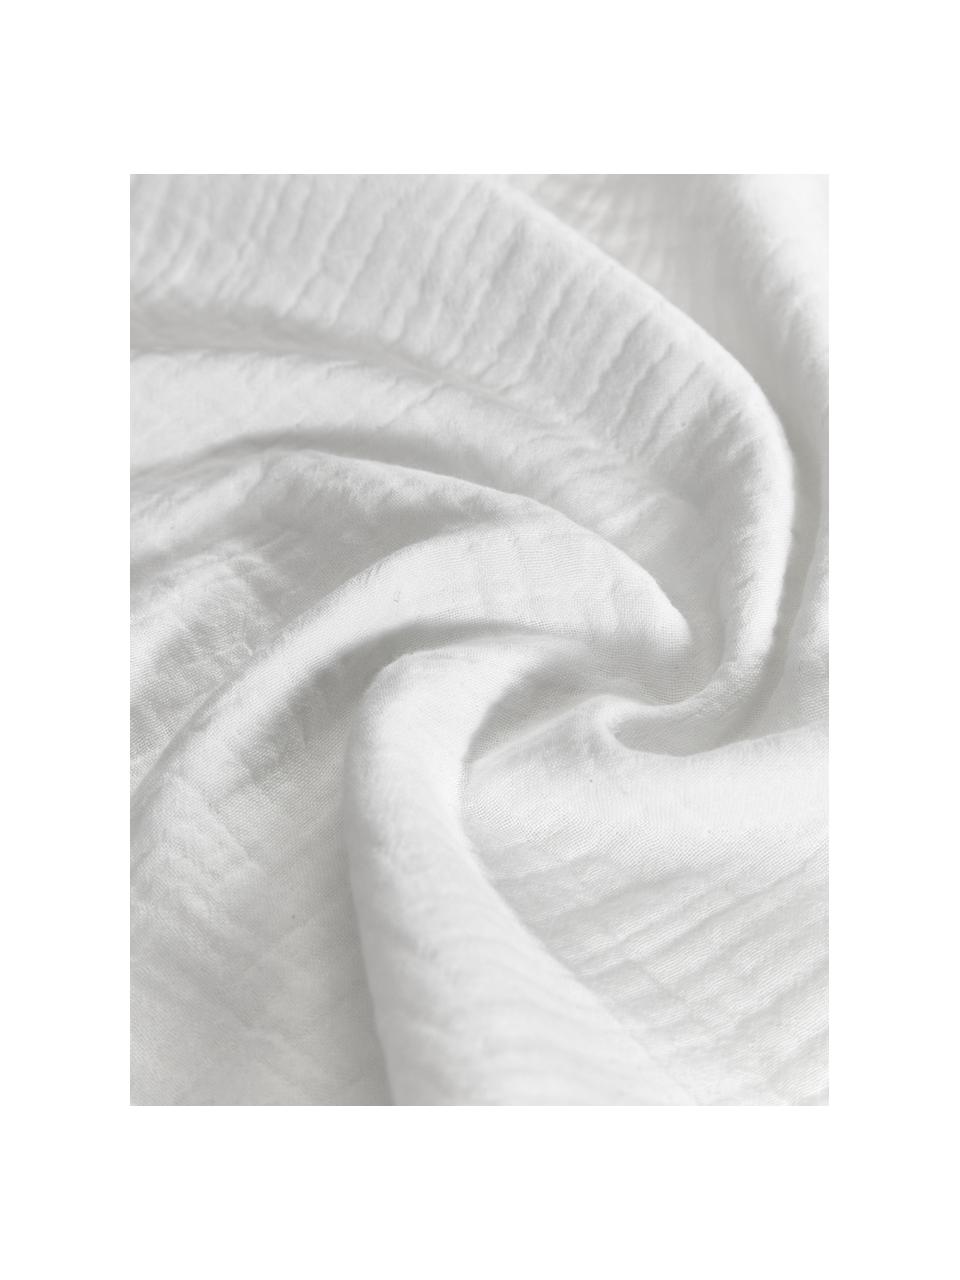 Pościel z muślinu bawełnianego Odile, Biały, 135 x 200 cm + 1 poduszka 80 x 80 cm